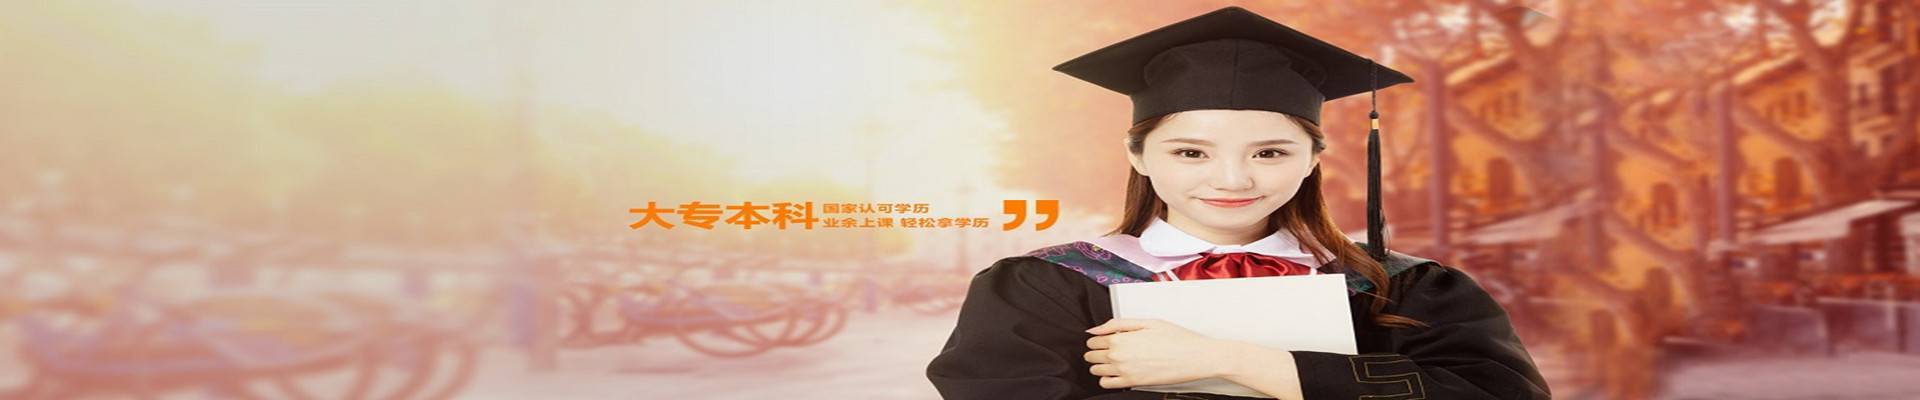 南京信息工程大学2+2国际本科